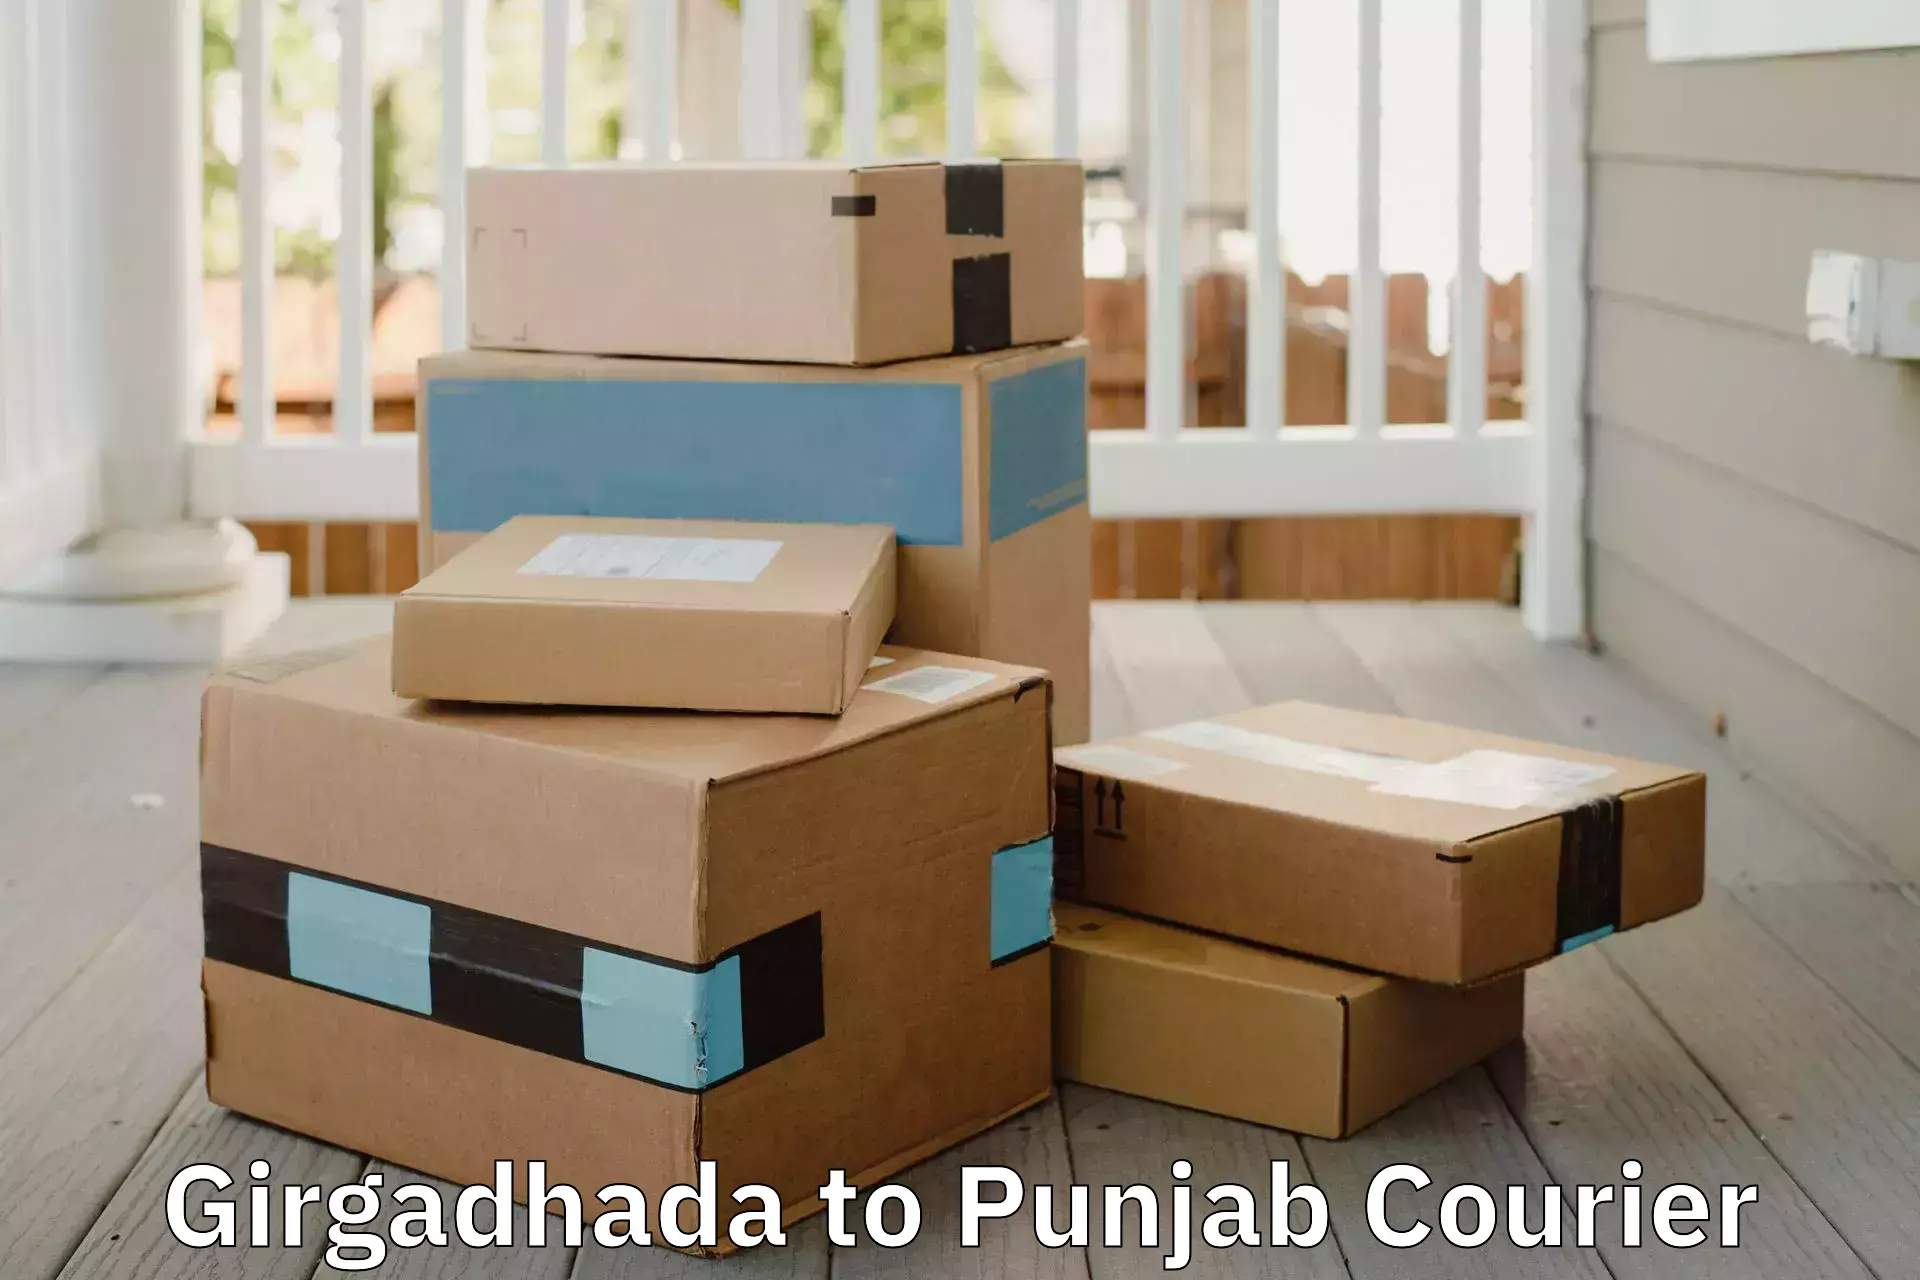 Trusted furniture movers Girgadhada to Fazilka